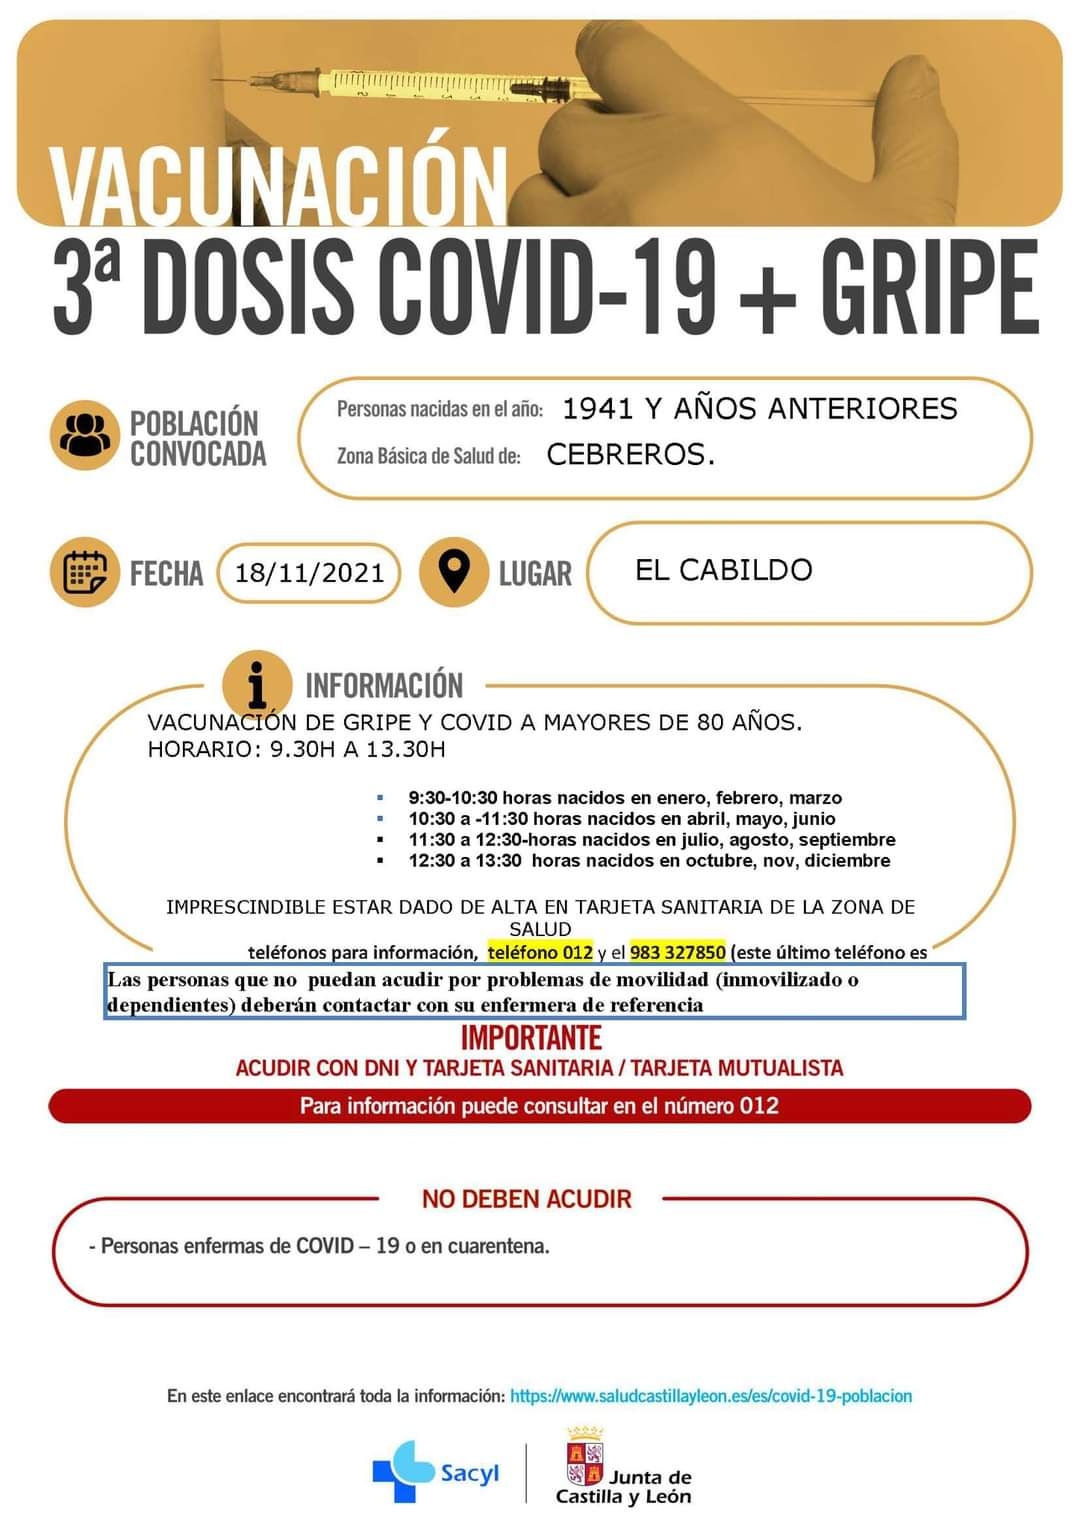 VACUNACIÓN 3ª DOSIS COVID-19+GRIPE: NACIDOS EN 1941 Y AÑOS ANTERIORES